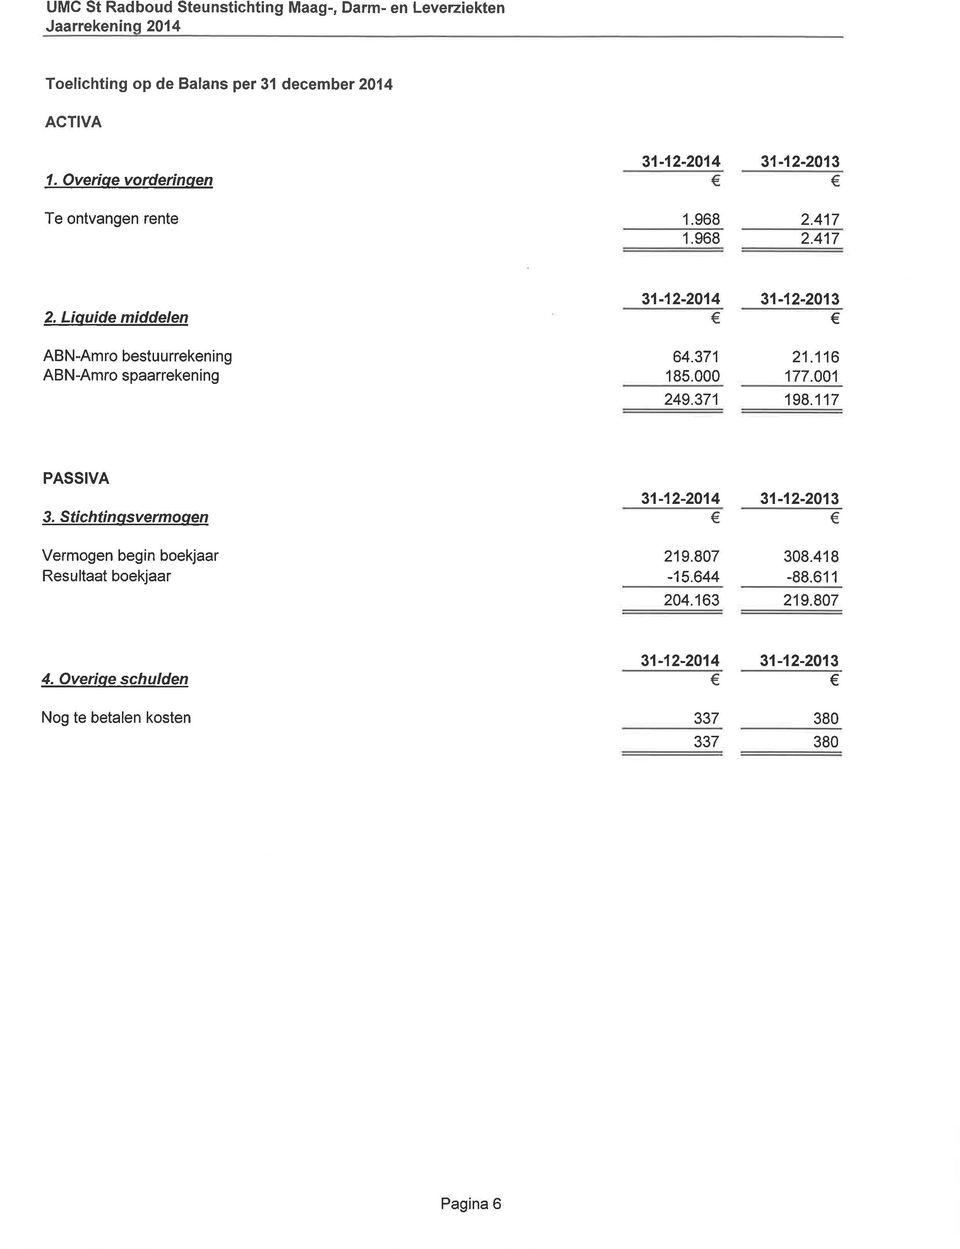 Liouide middelen ABN-Amro bestuurrekening ABN-Amro spaarrekening 31-12-2014 31-12-2013 64.371 185.000 21.116 177.001 249.371 198.